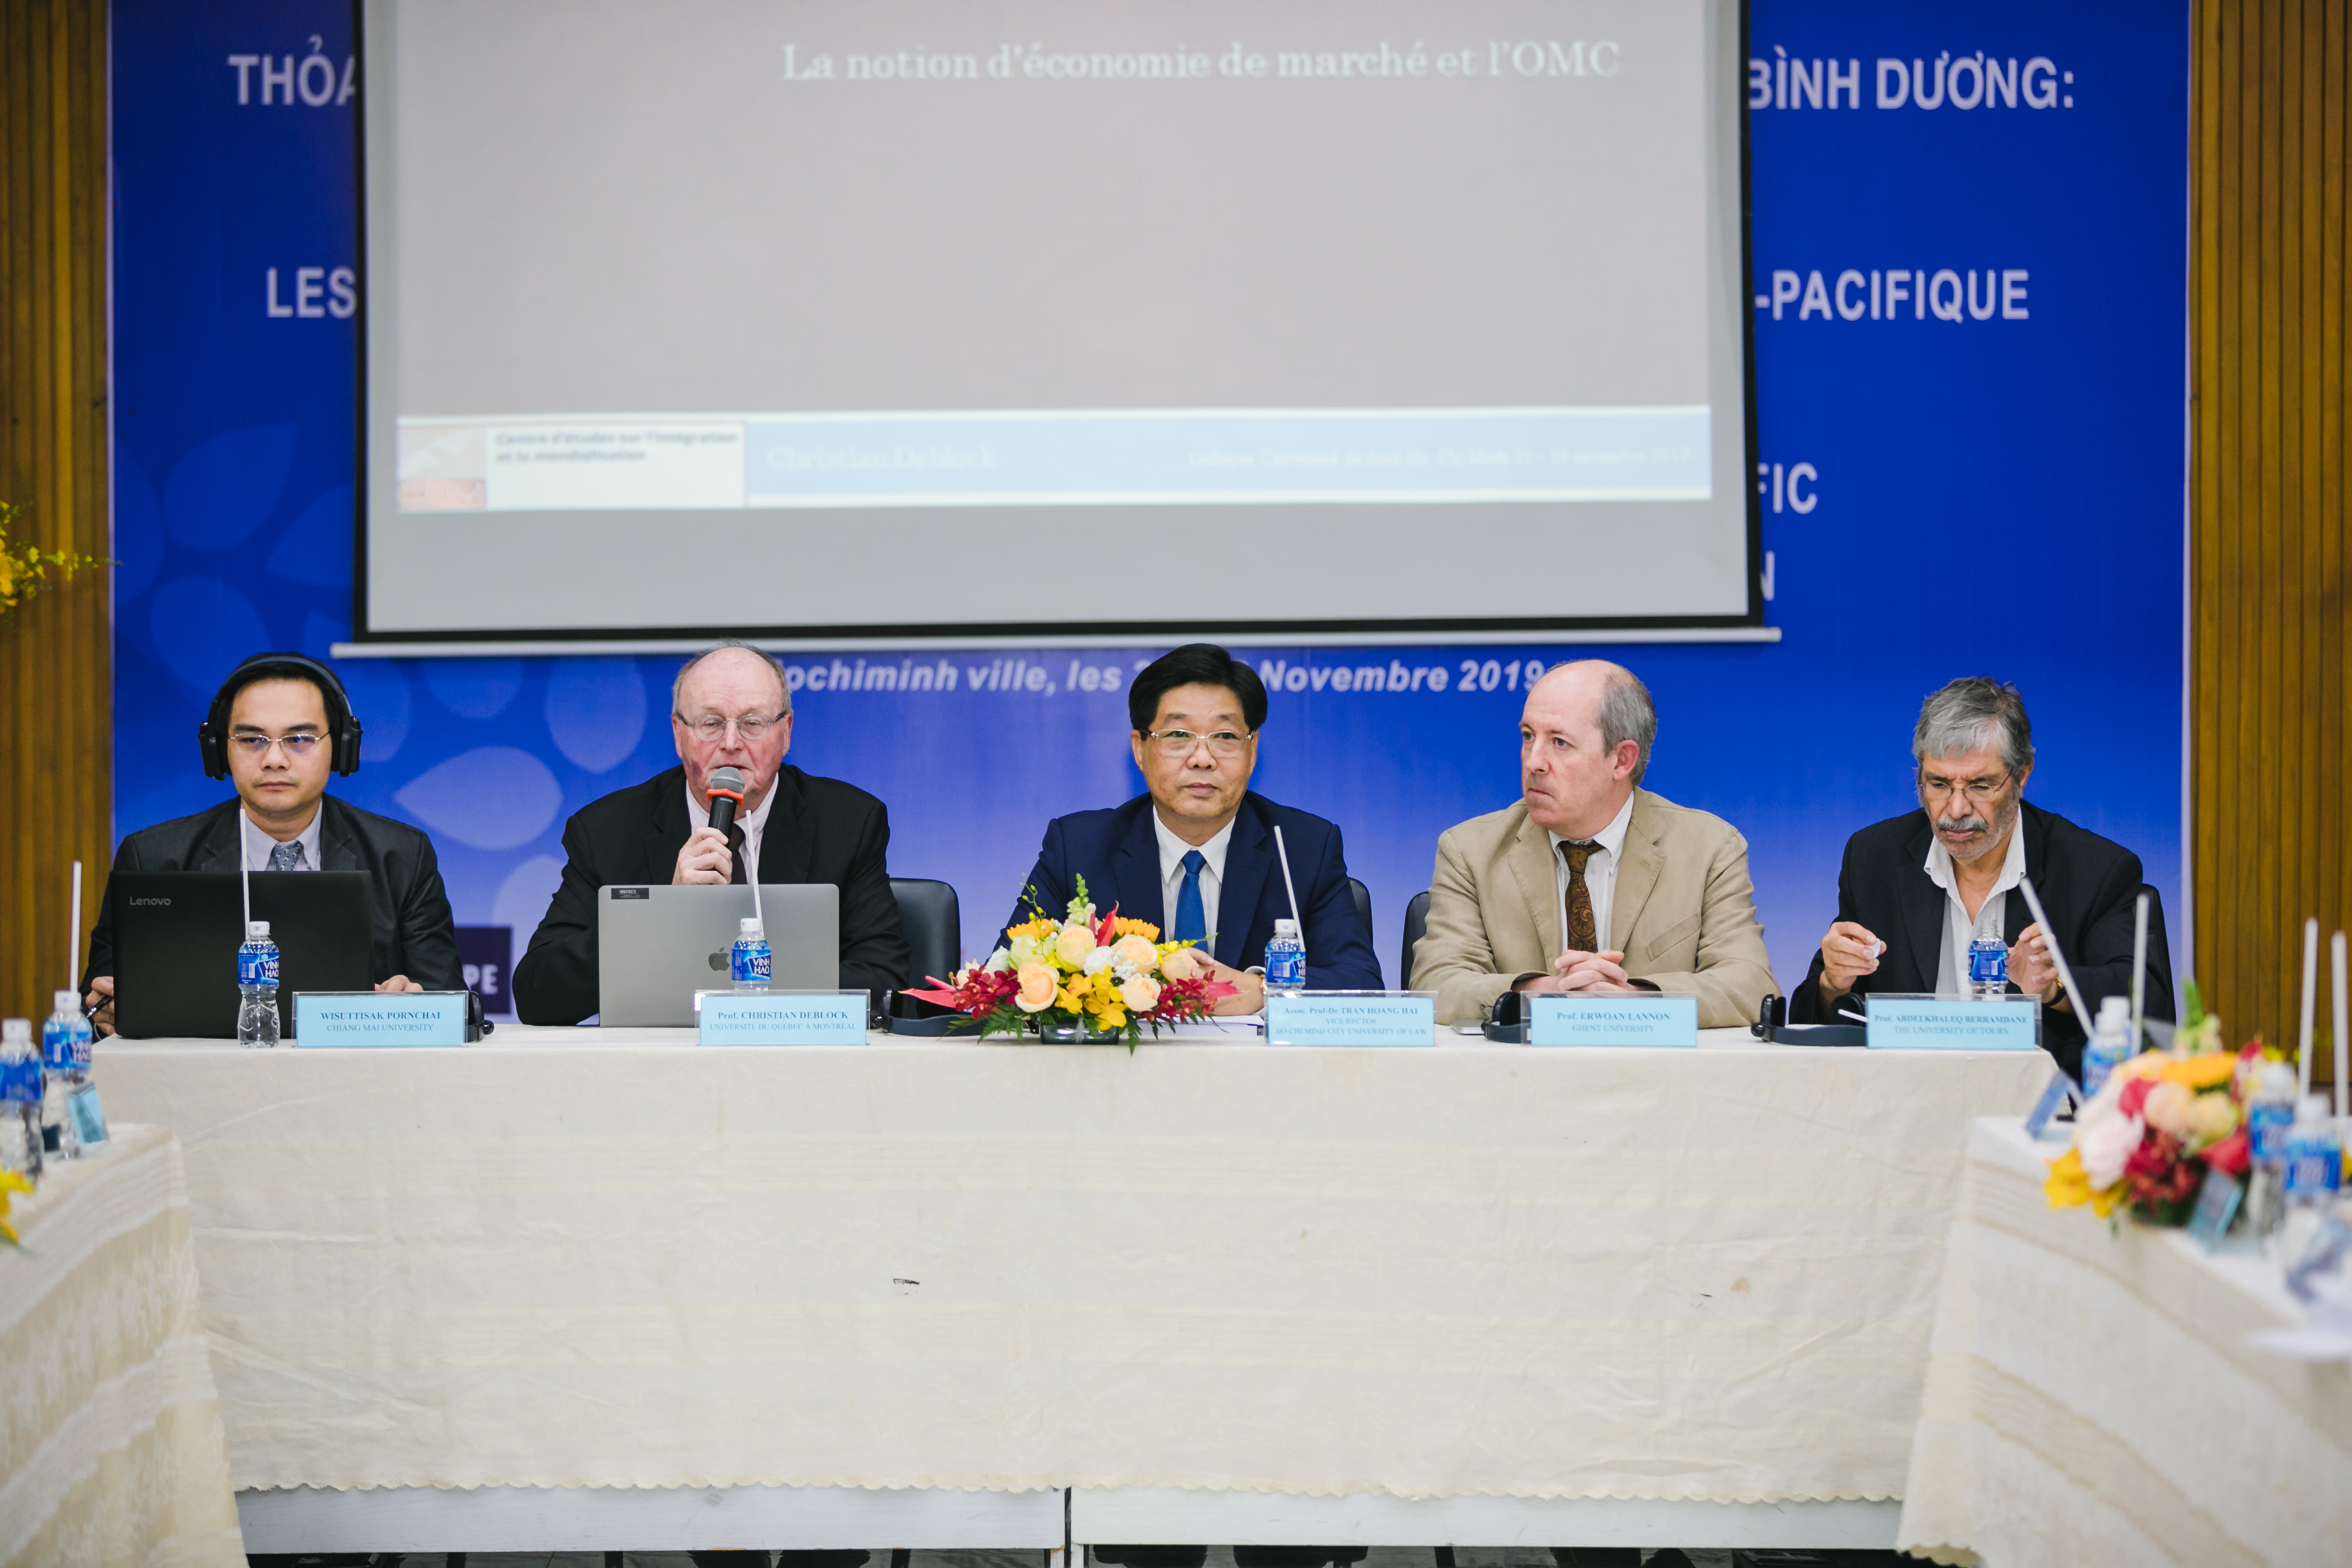 เข้าร่วมประชุม Colloque “Les Partenaires des Puissances Economique en Asie Pacifique” Colloquium on “Partnership of Economic Power in Asia Pacific” 